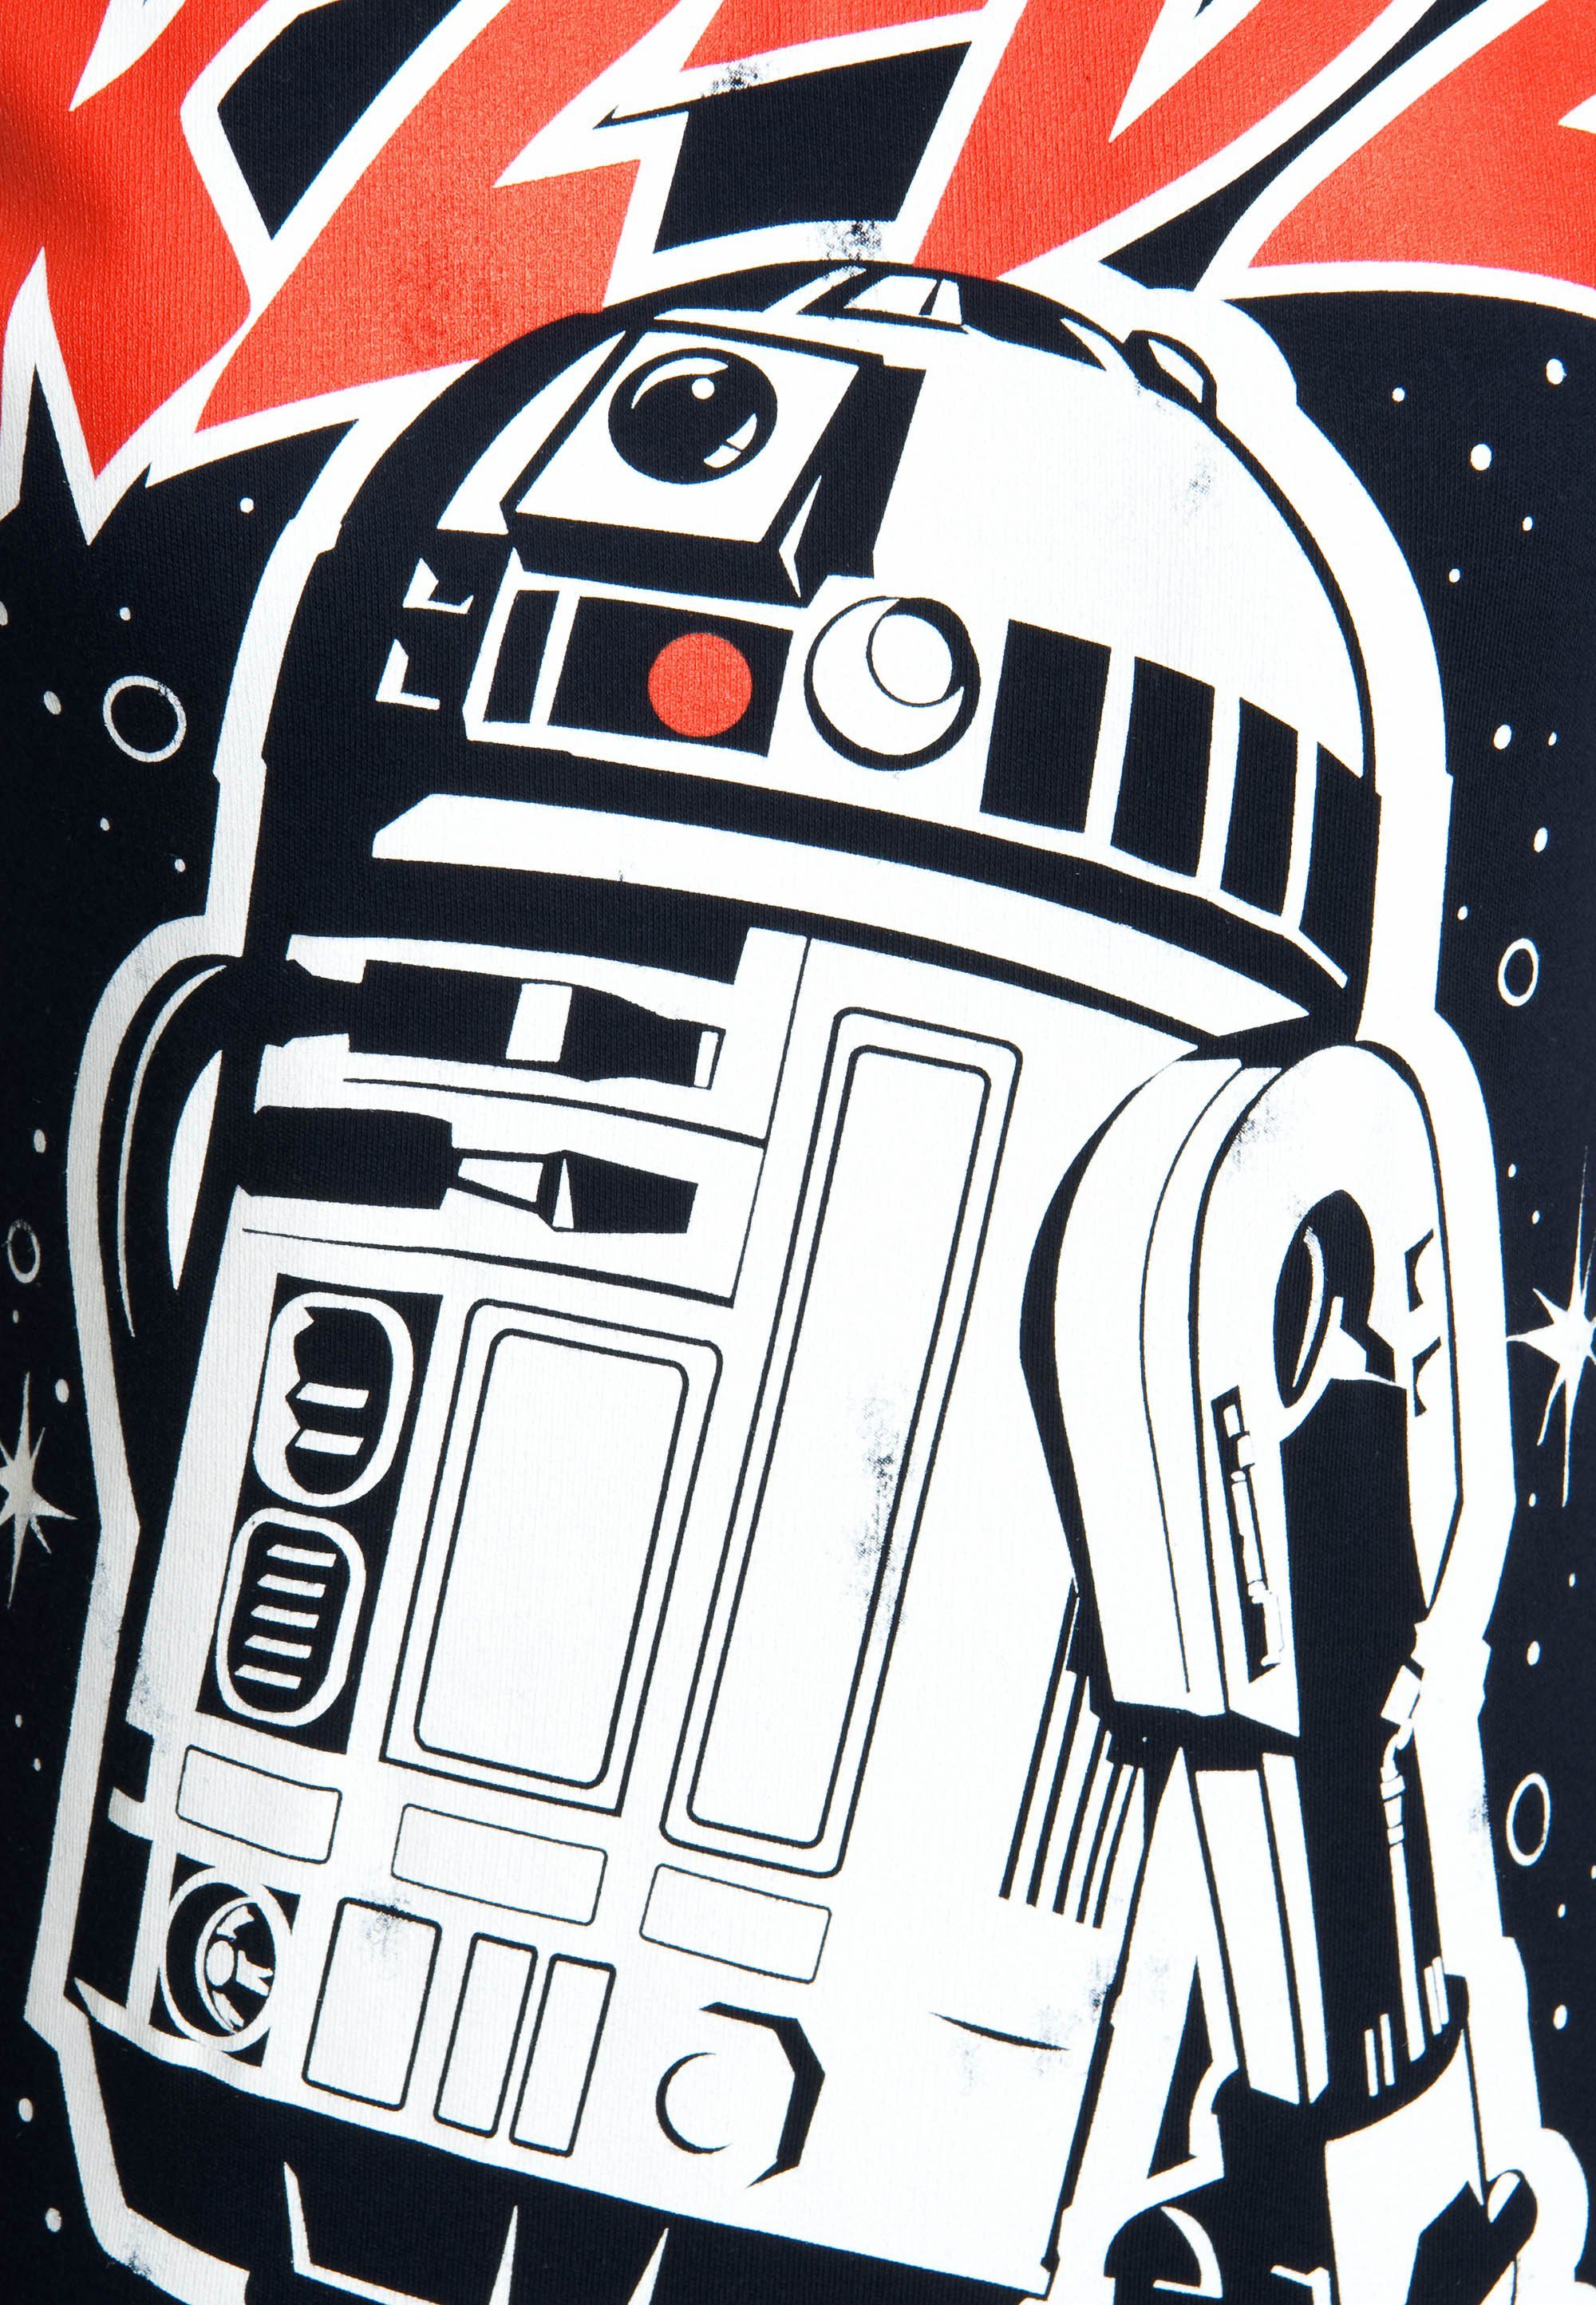 T-Shirt mit Originaldesign R2-D2 LOGOSHIRT lizenzierten